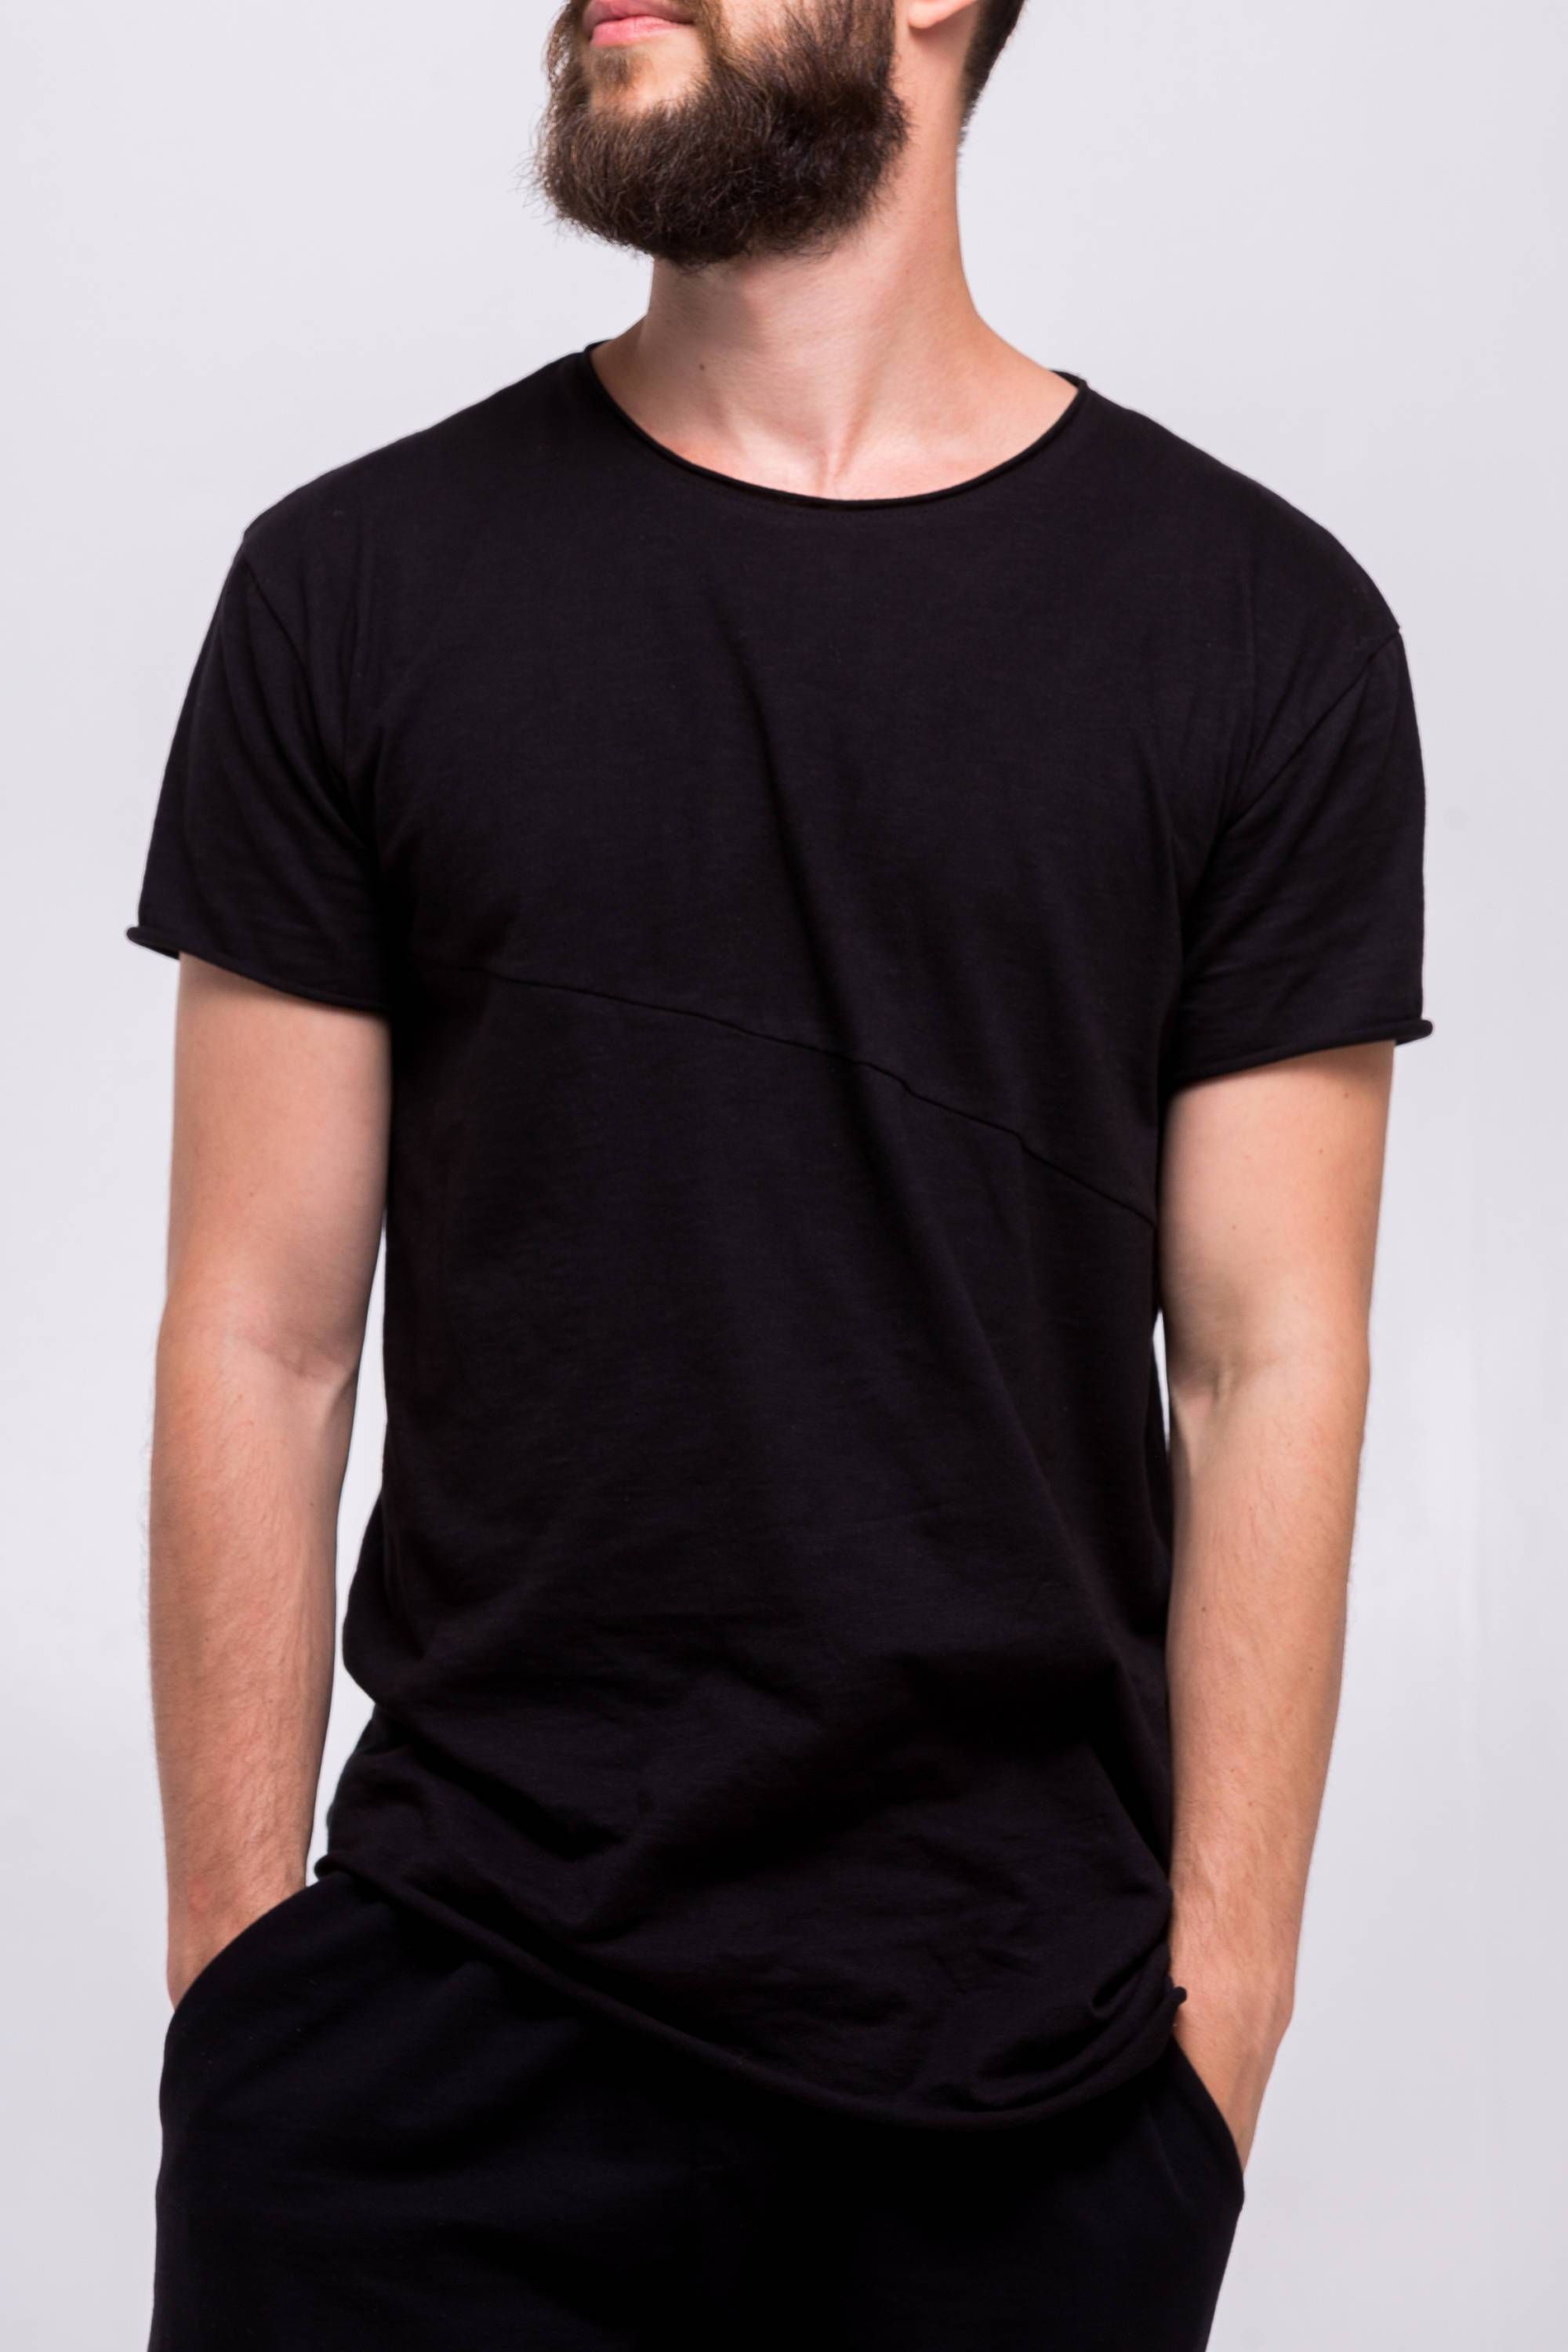 Basic extended black T-Shirt | Black tshirt, Black tshirt men, Mens tshirts